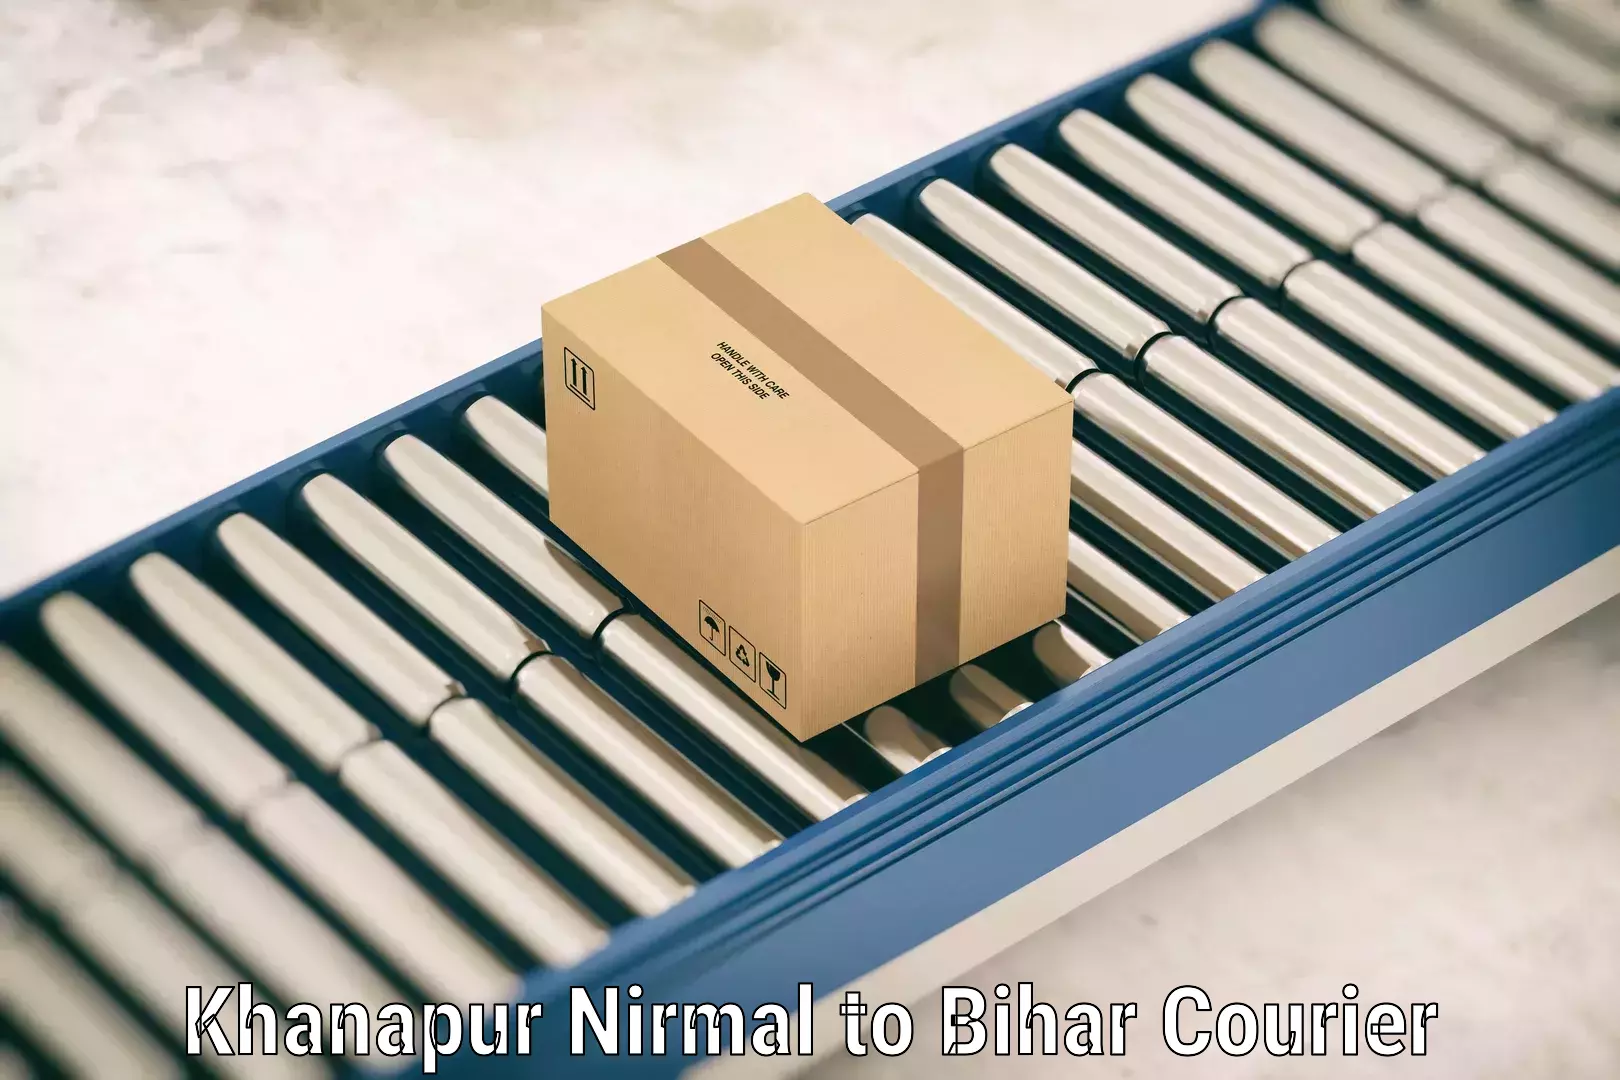 Baggage shipping calculator Khanapur Nirmal to Gaya